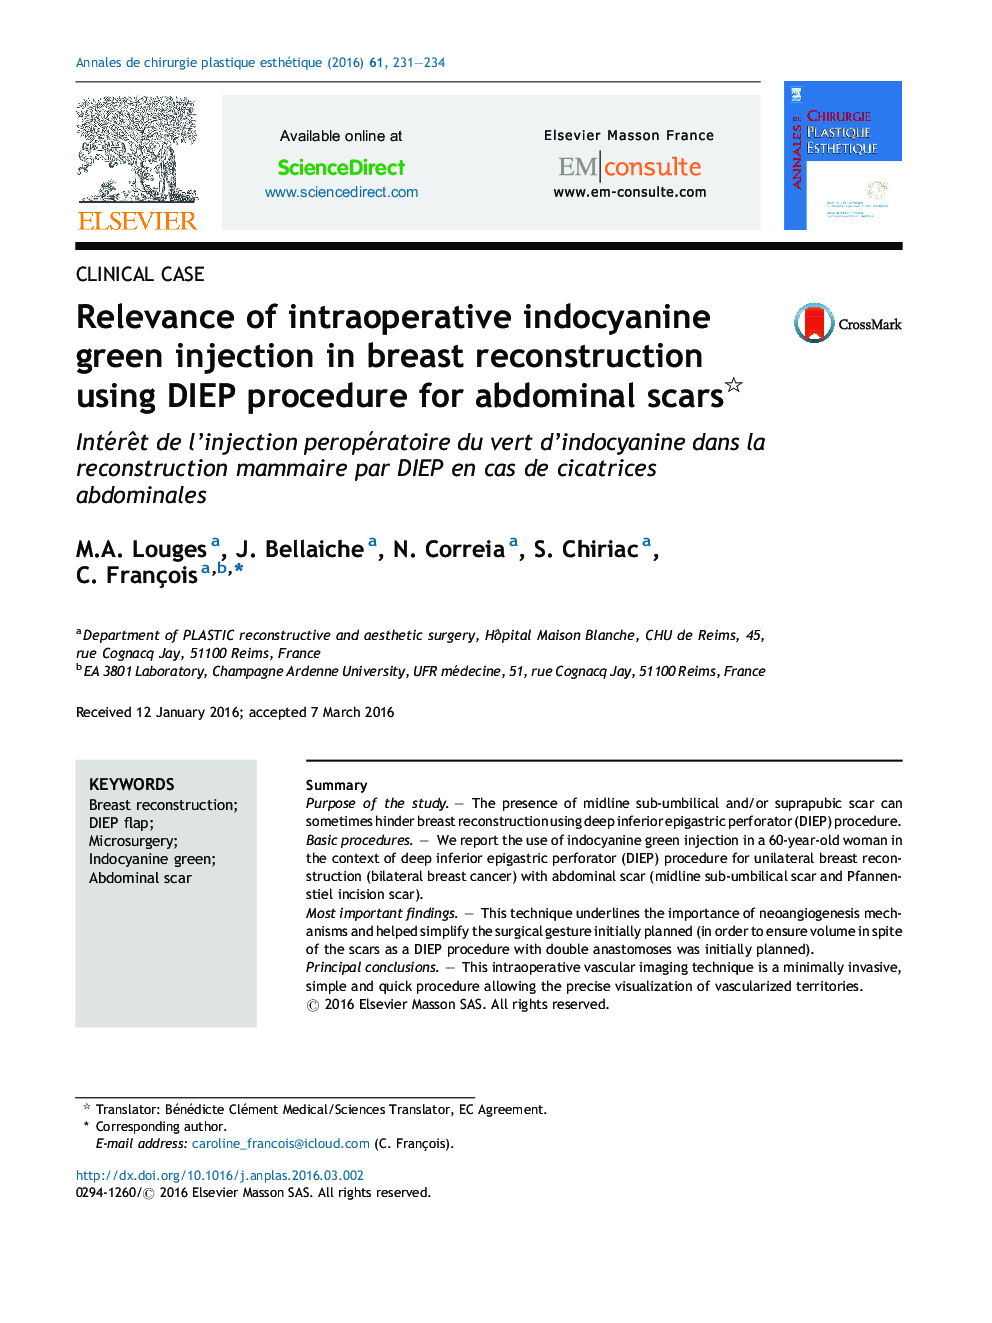 ارتباط تزریق ایندوسیانین سبز عمل جراحی در ترمیم پستان با استفاده از روش DIEP برای زخم شکمی